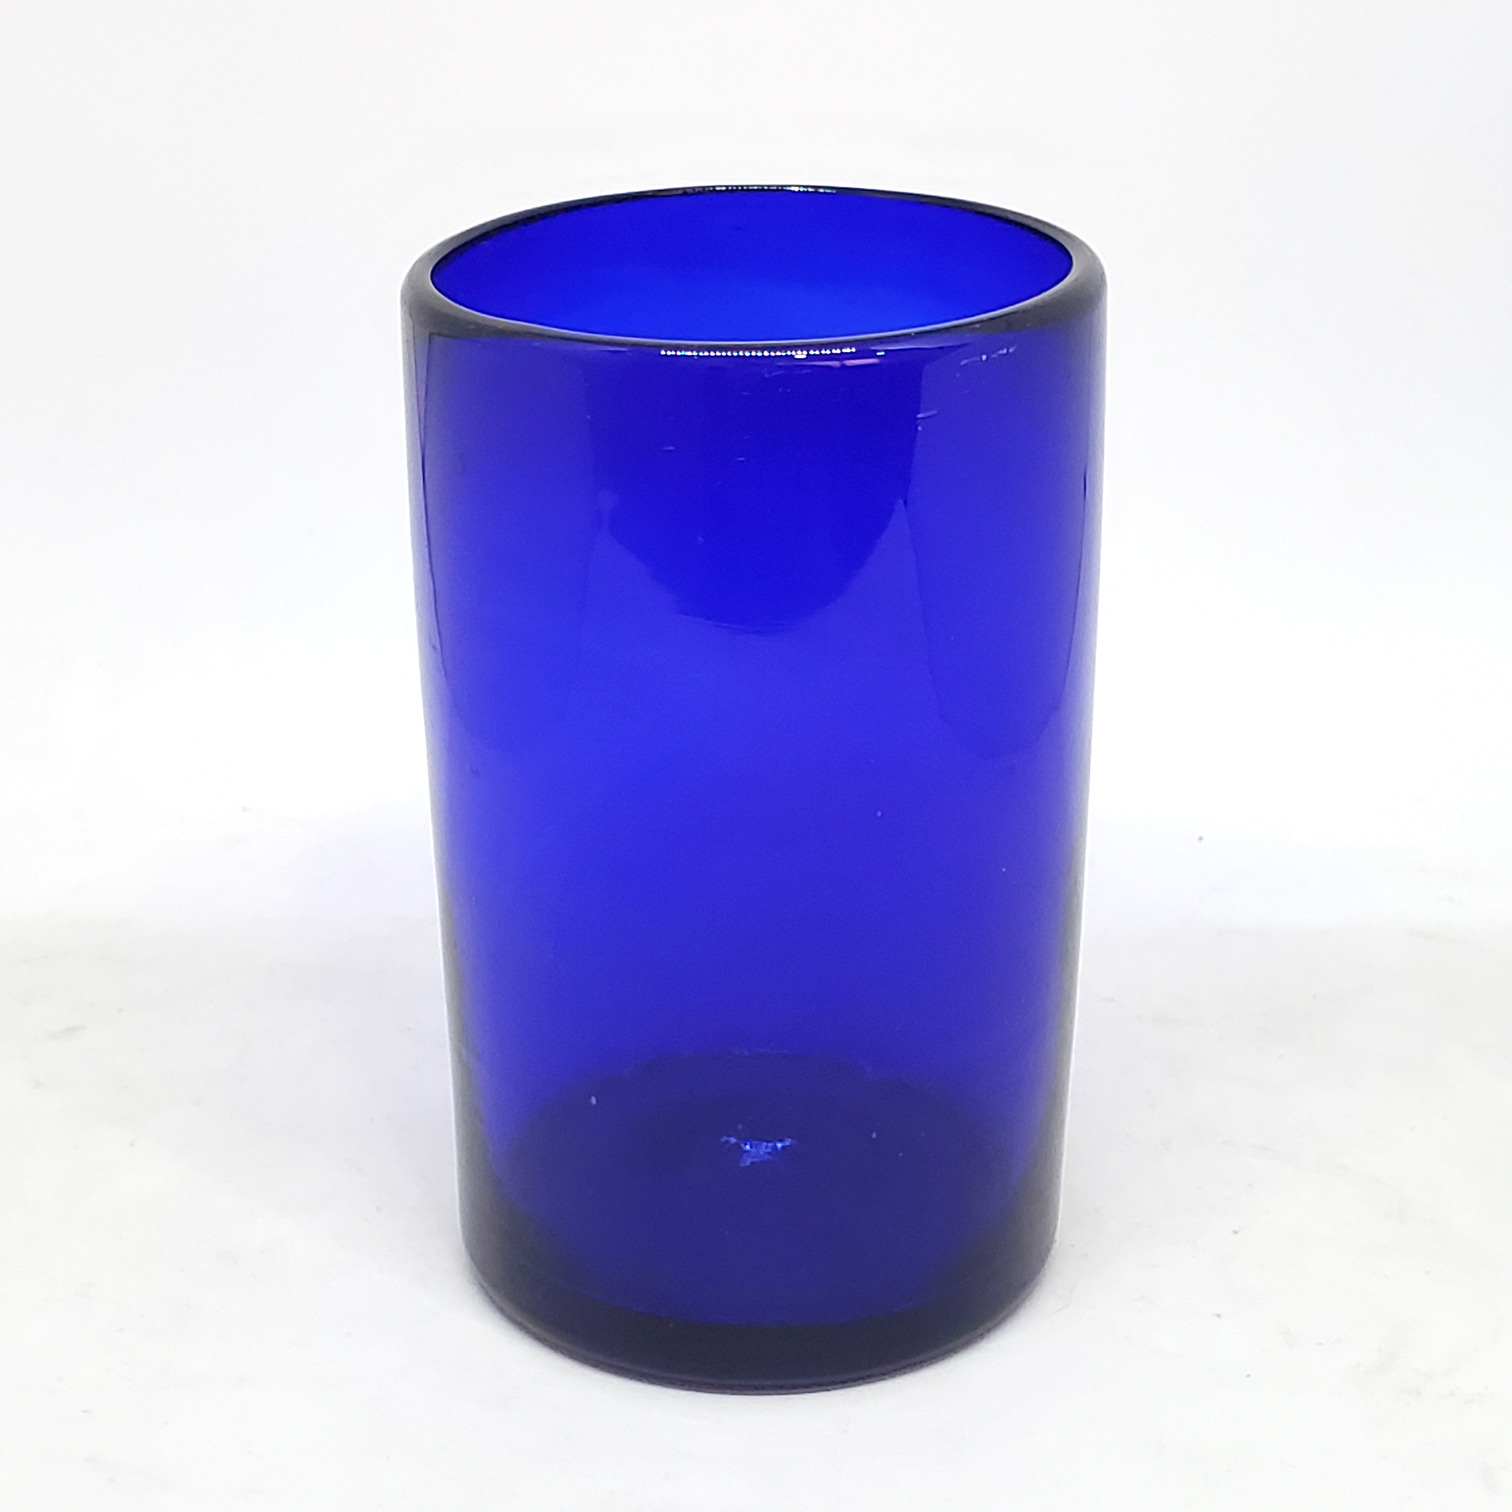 Novedades / Juego de 6 vasos grandes color azul cobalto / Éstos artesanales vasos le darán un toque clásico a su bebida favorita.